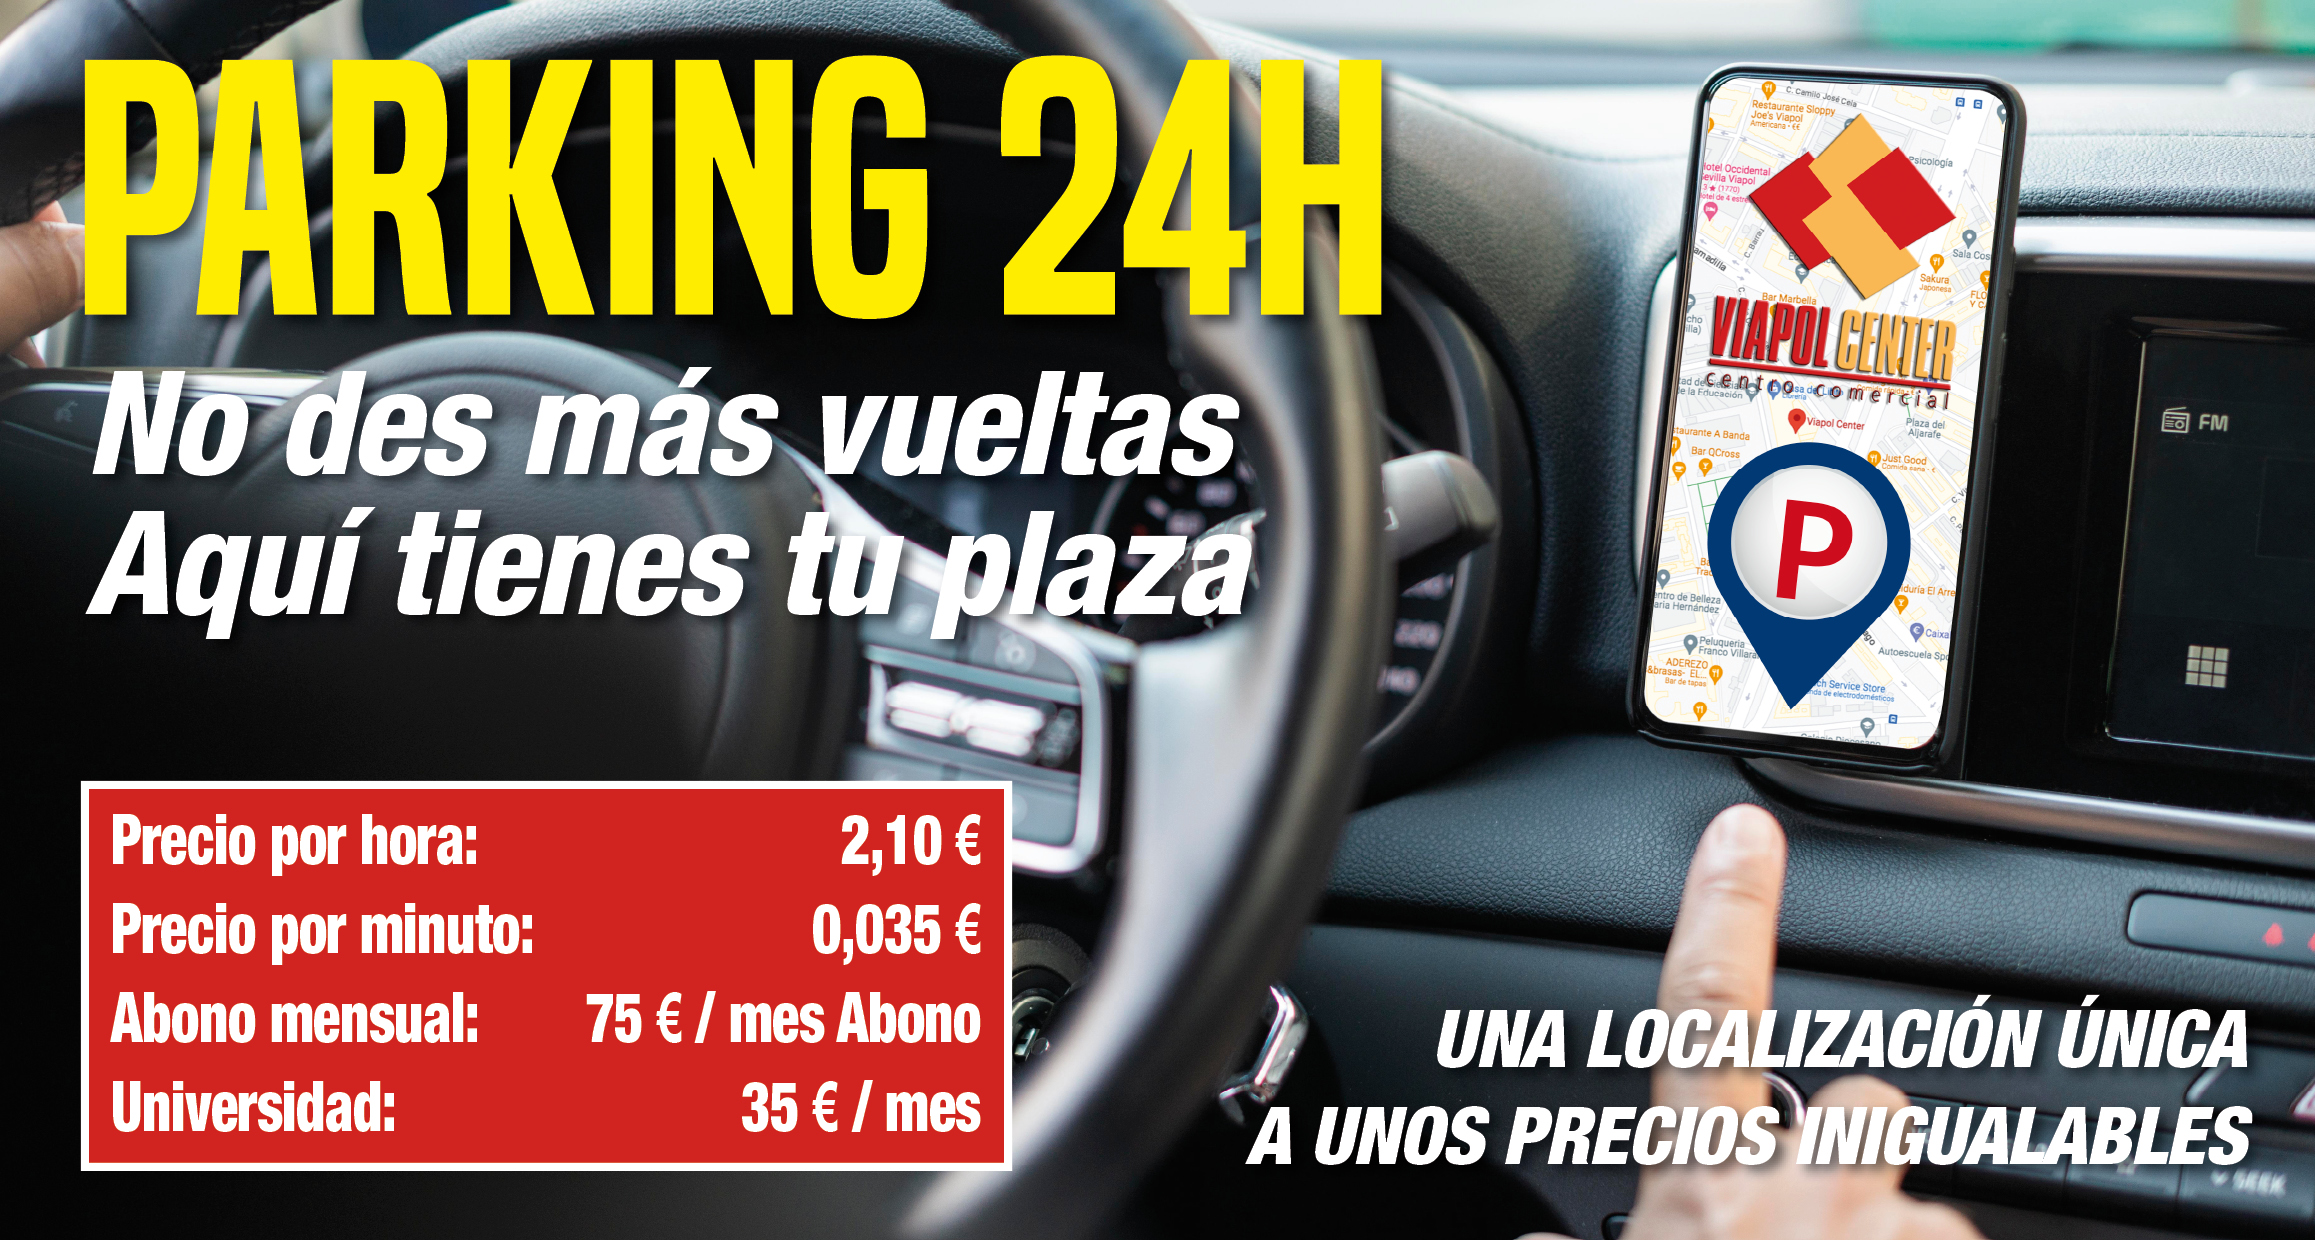 Parking VIAPOLCENTER – Accesos al Centro Comercial Viapol Center desde Cuatro Vientos y Ramón y Cajal reabiertos al tráfico.